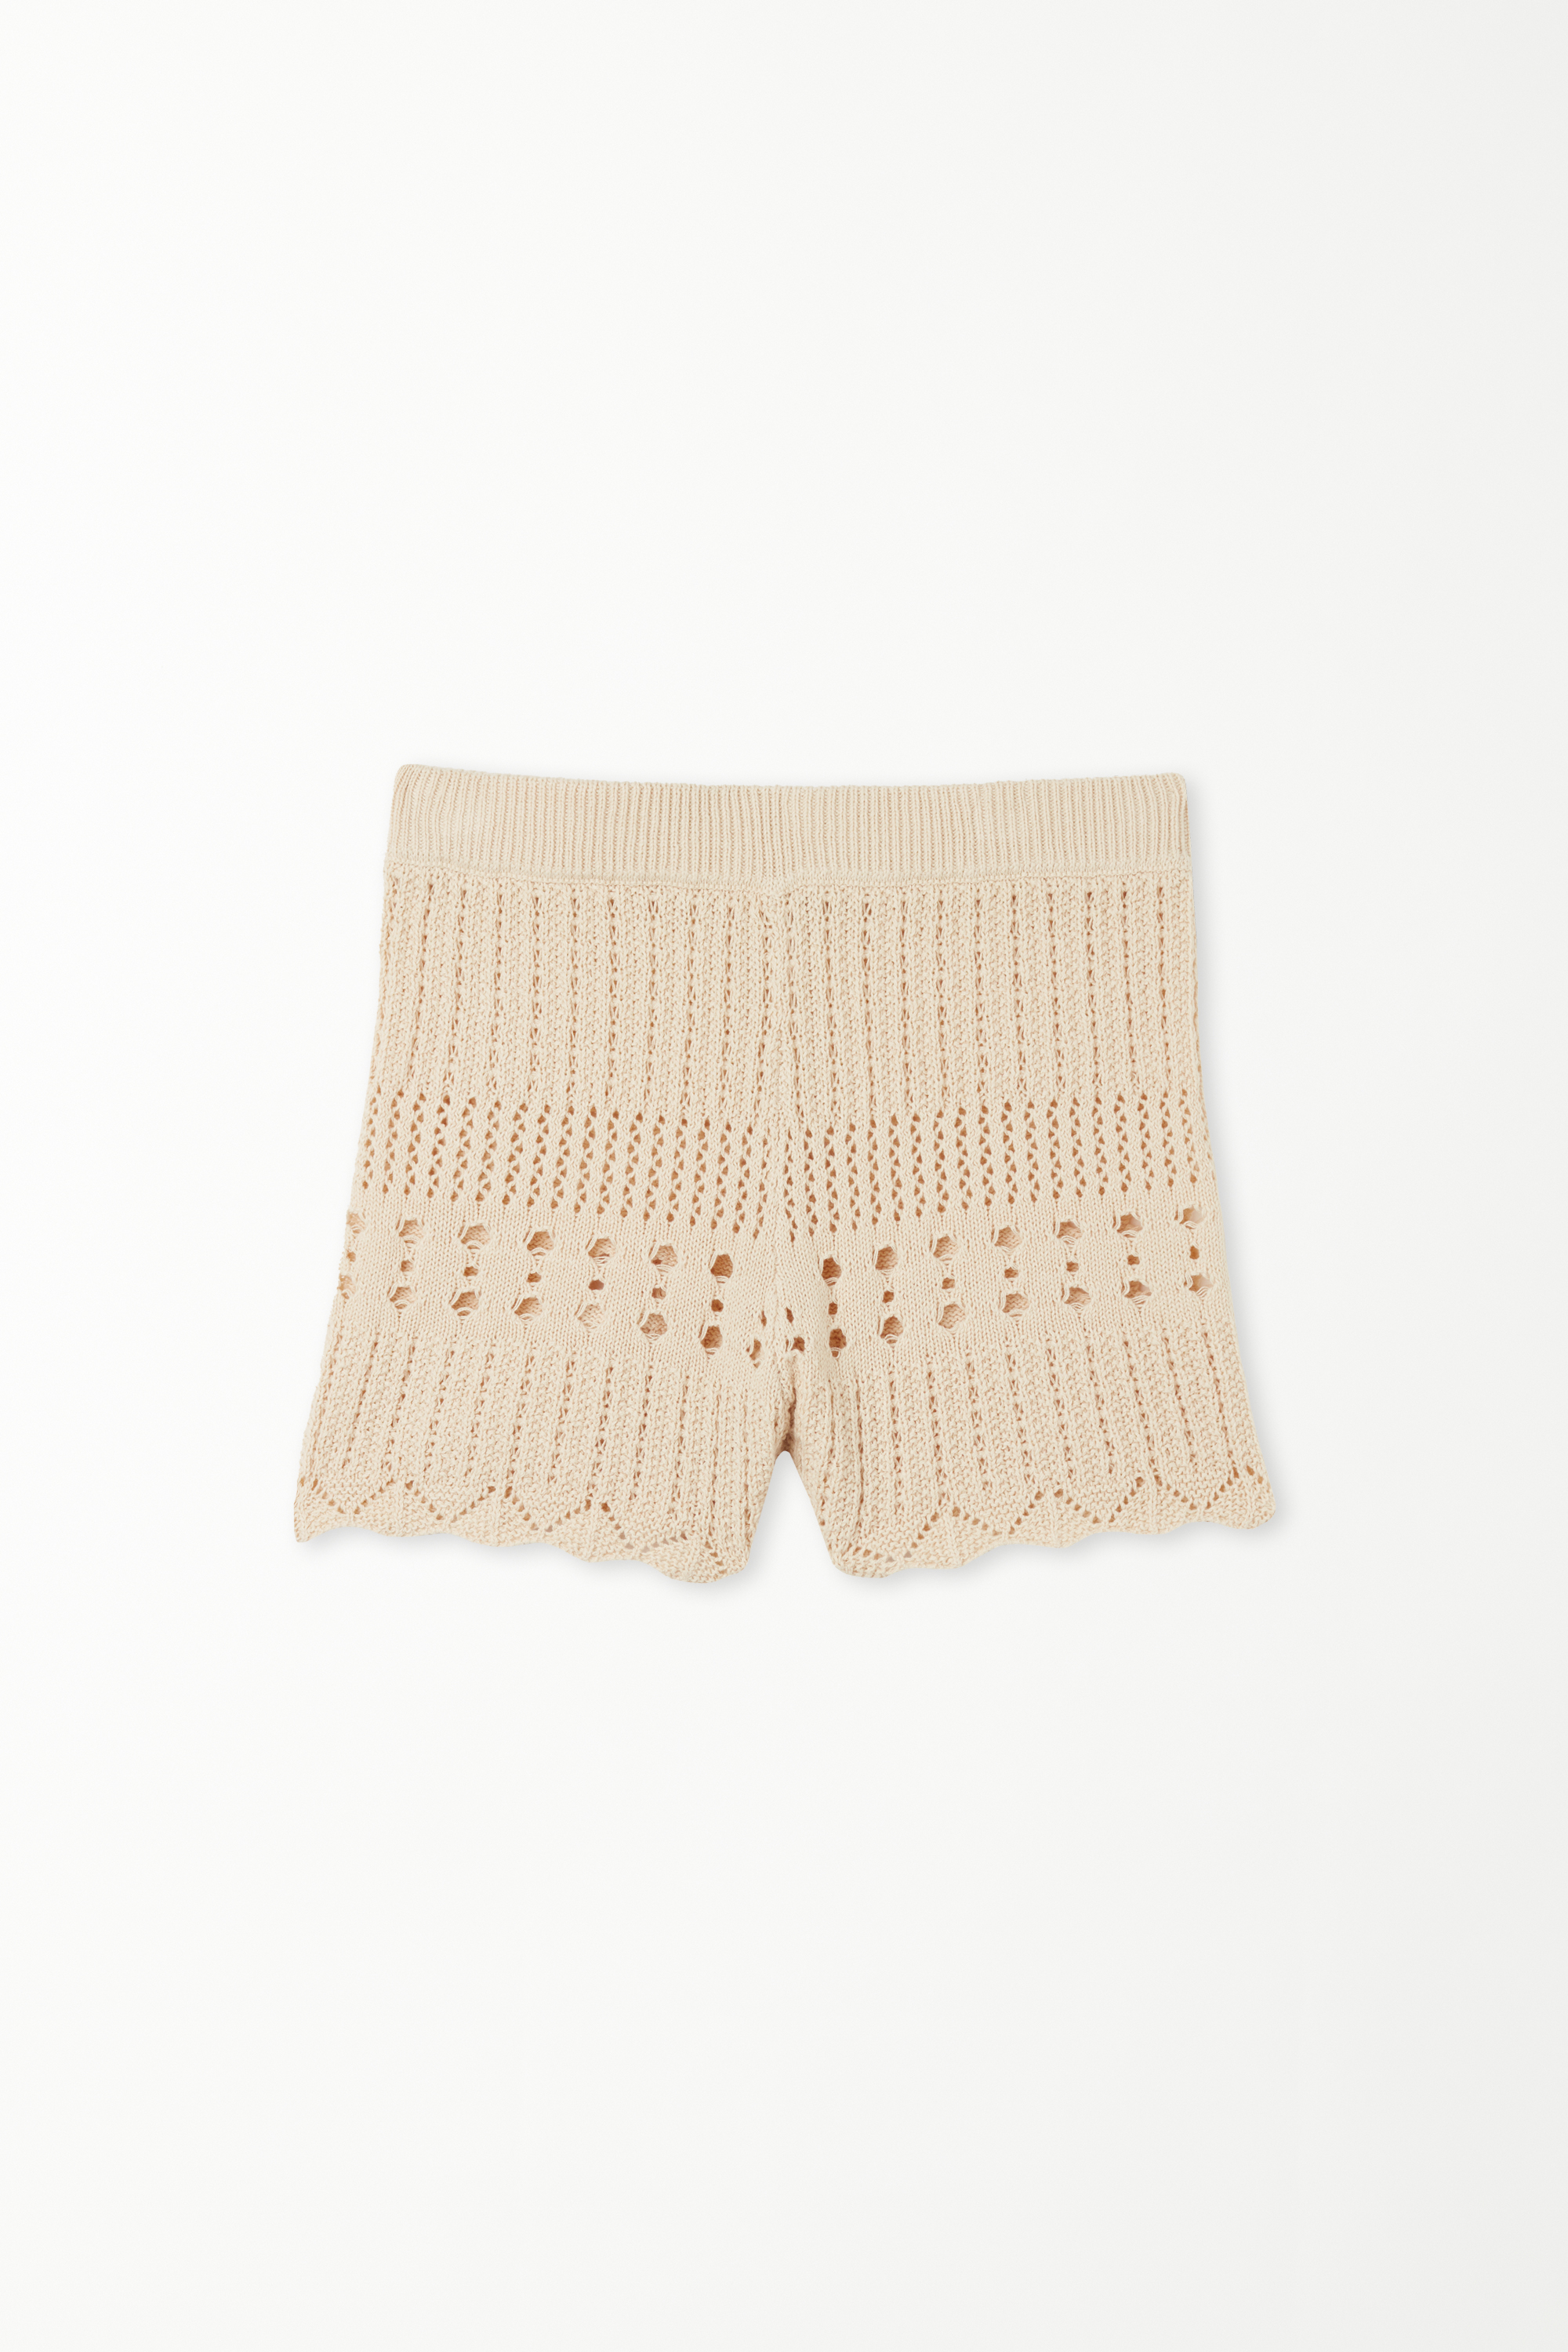 High-Waist Crochet Shorts